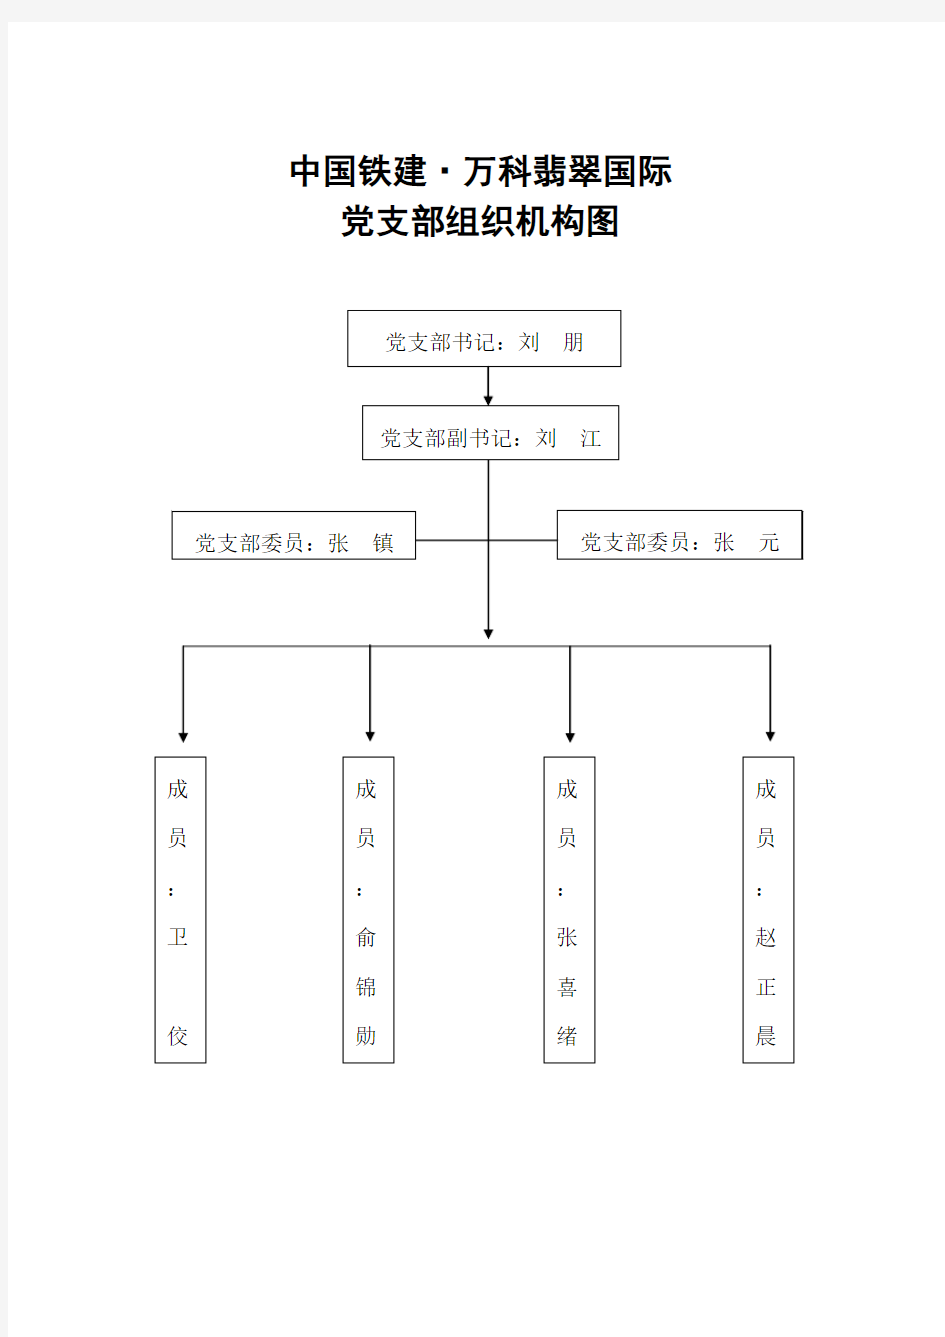 党支部组织机构管理网络图(3.3)